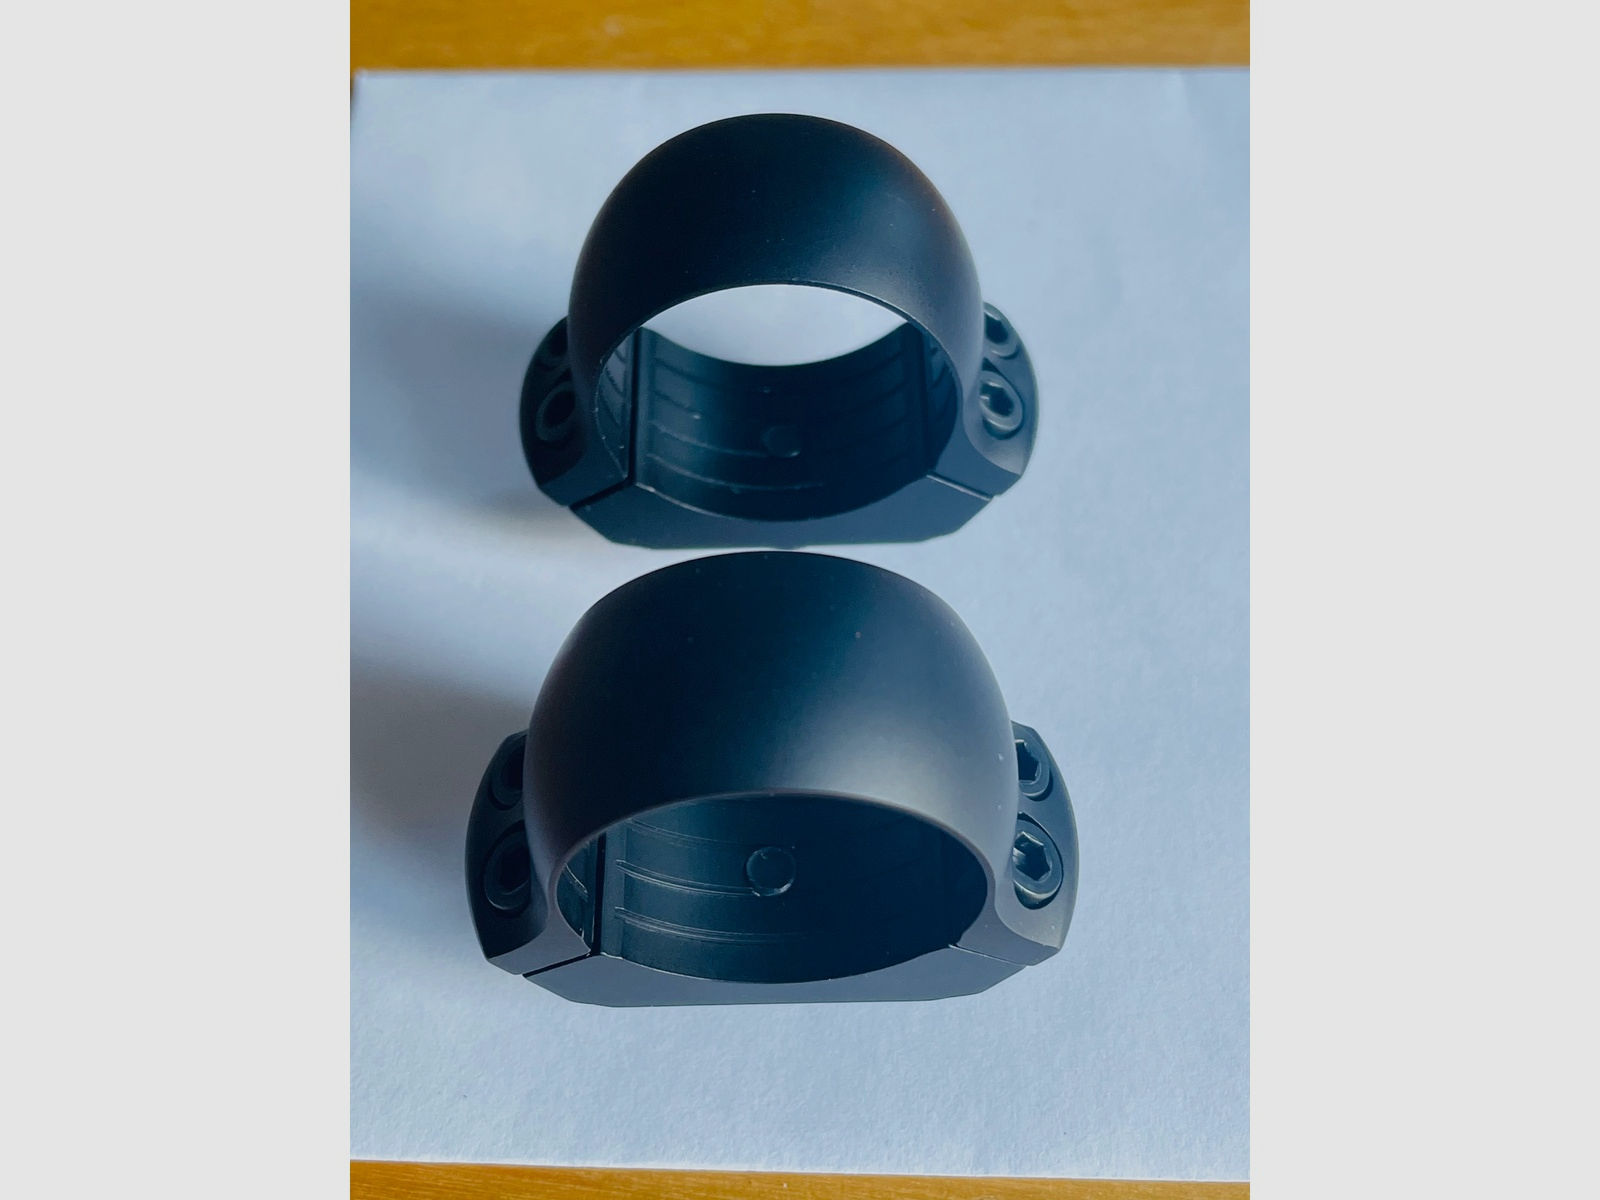 2x Dentler Montage BASIS ® Ringe | Montageringe ø 25,4mm BH 3,5mm 